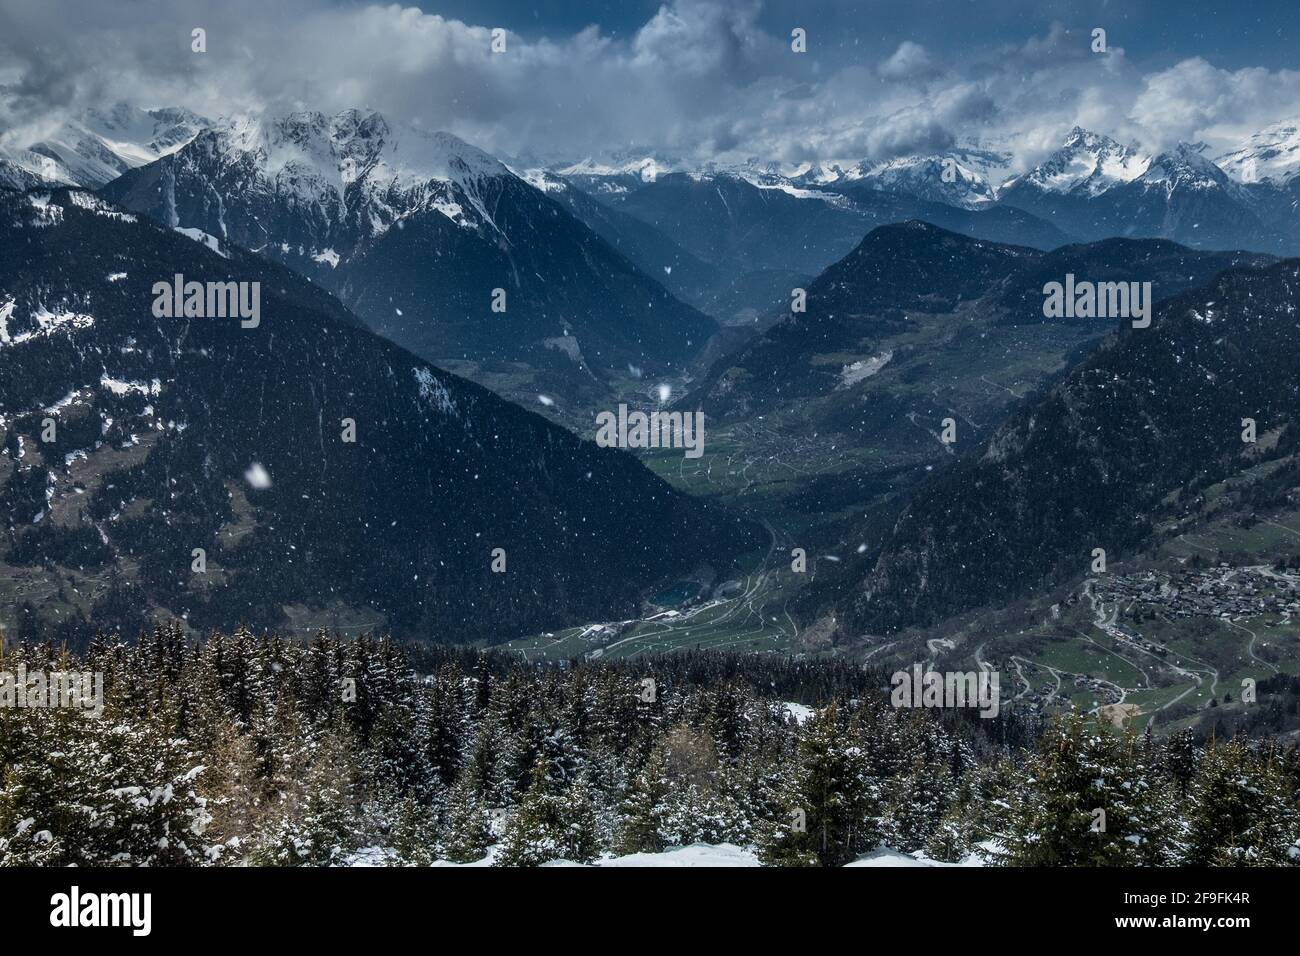 Vista sul paesaggio della risistemazione da sci e snowboard di Verbier - 4 Vallées, con escursioni innevate sullo sfondo. Girato a Verbier, Vallese, Svizzera Foto Stock